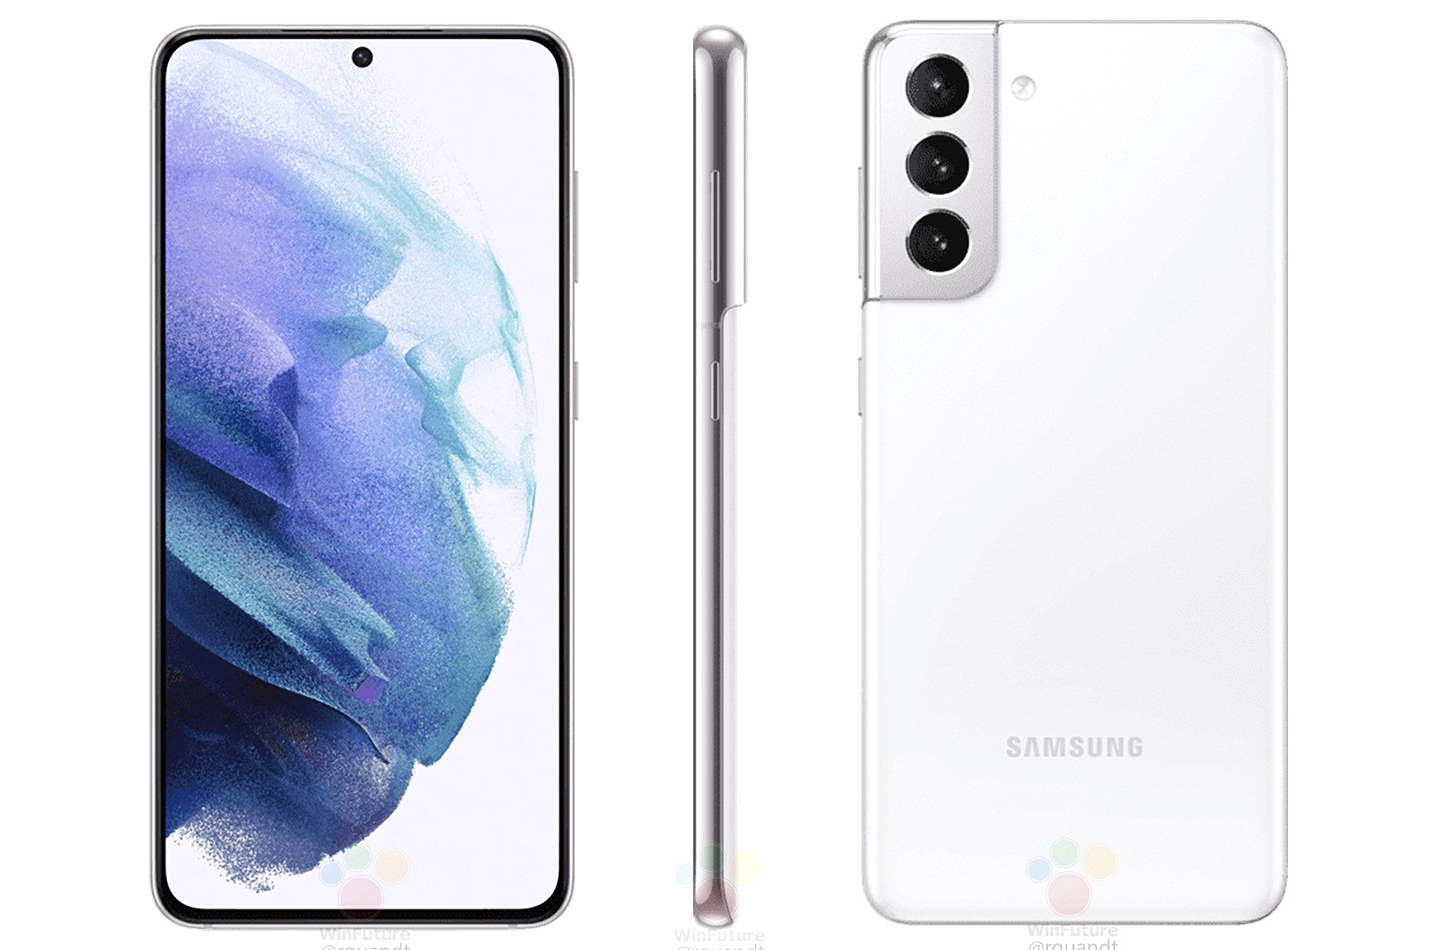 gebaar geestelijke Bewijzen Samsung lekt officiële afbeeldingen van Galaxy S21 telefoons | LetsGoDigital